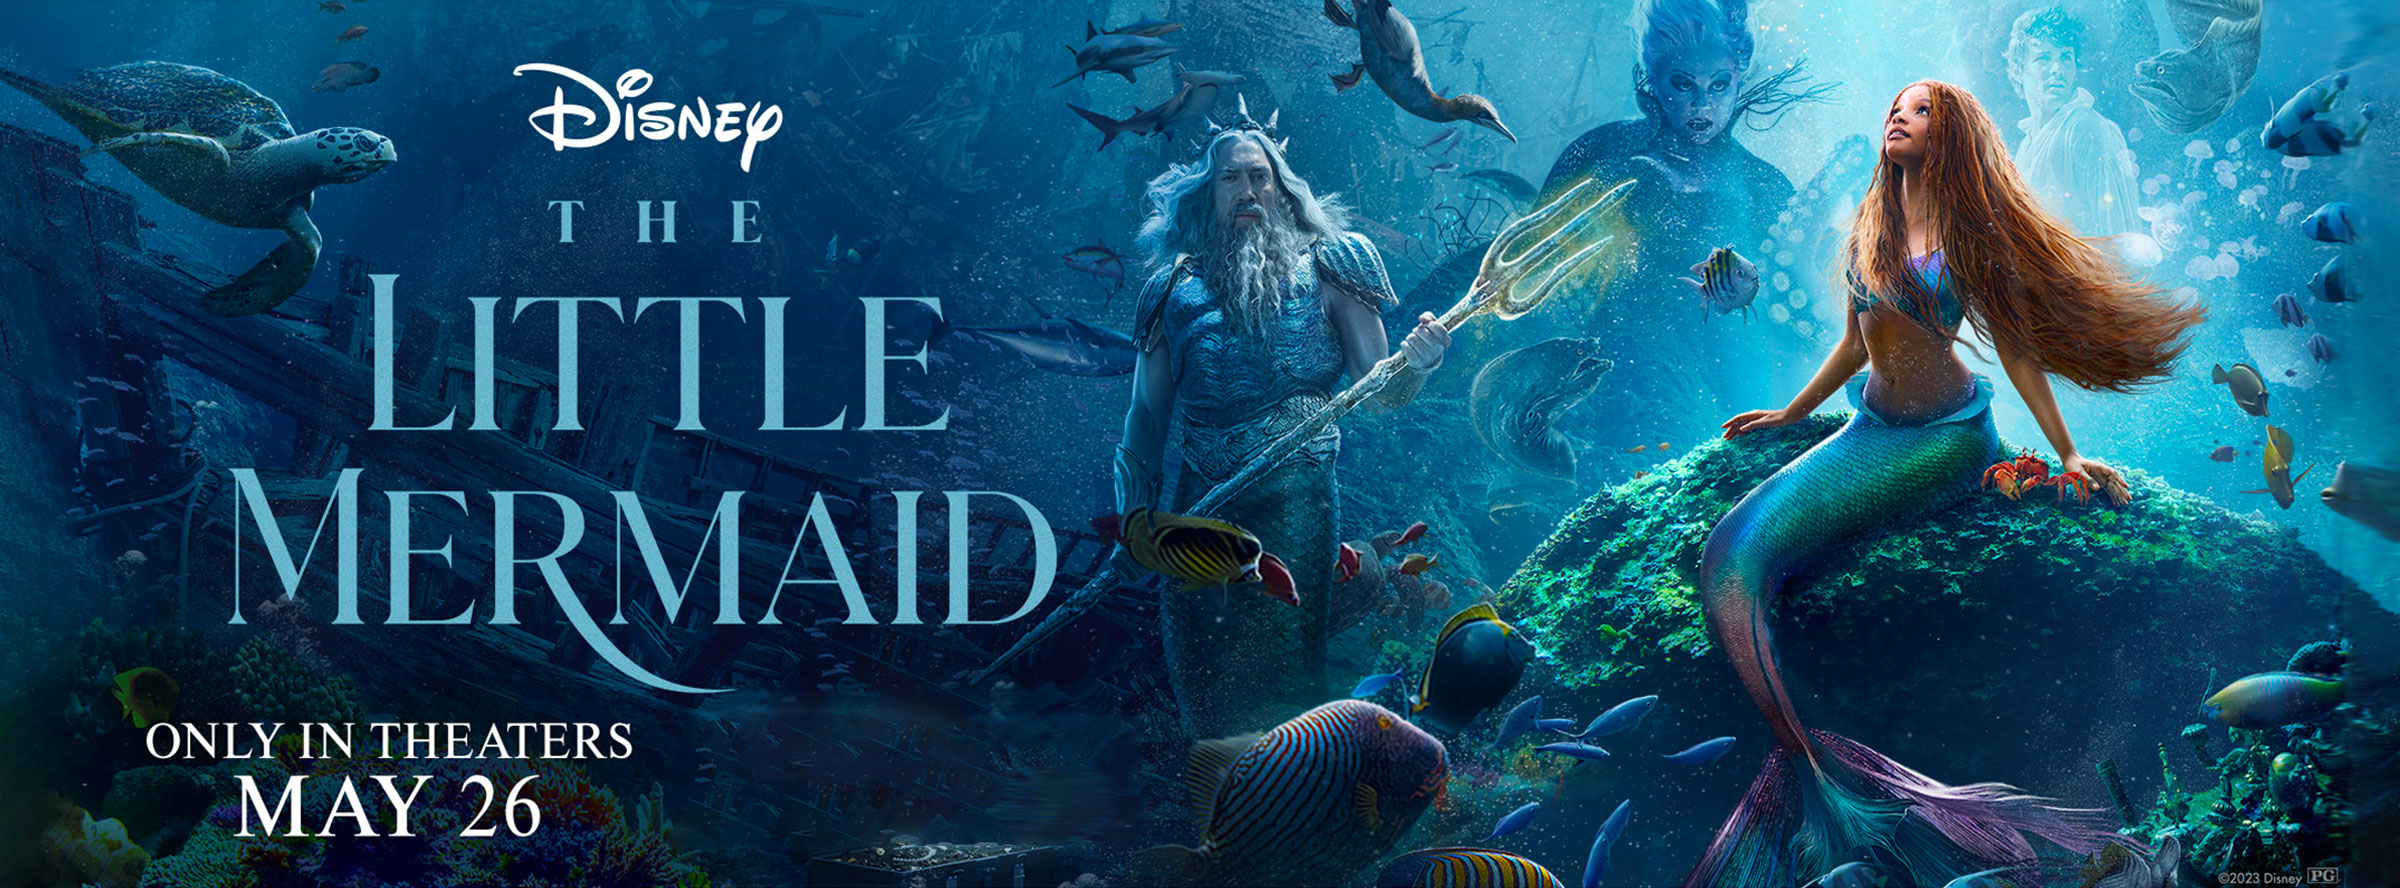 Banner for The Little Mermaid